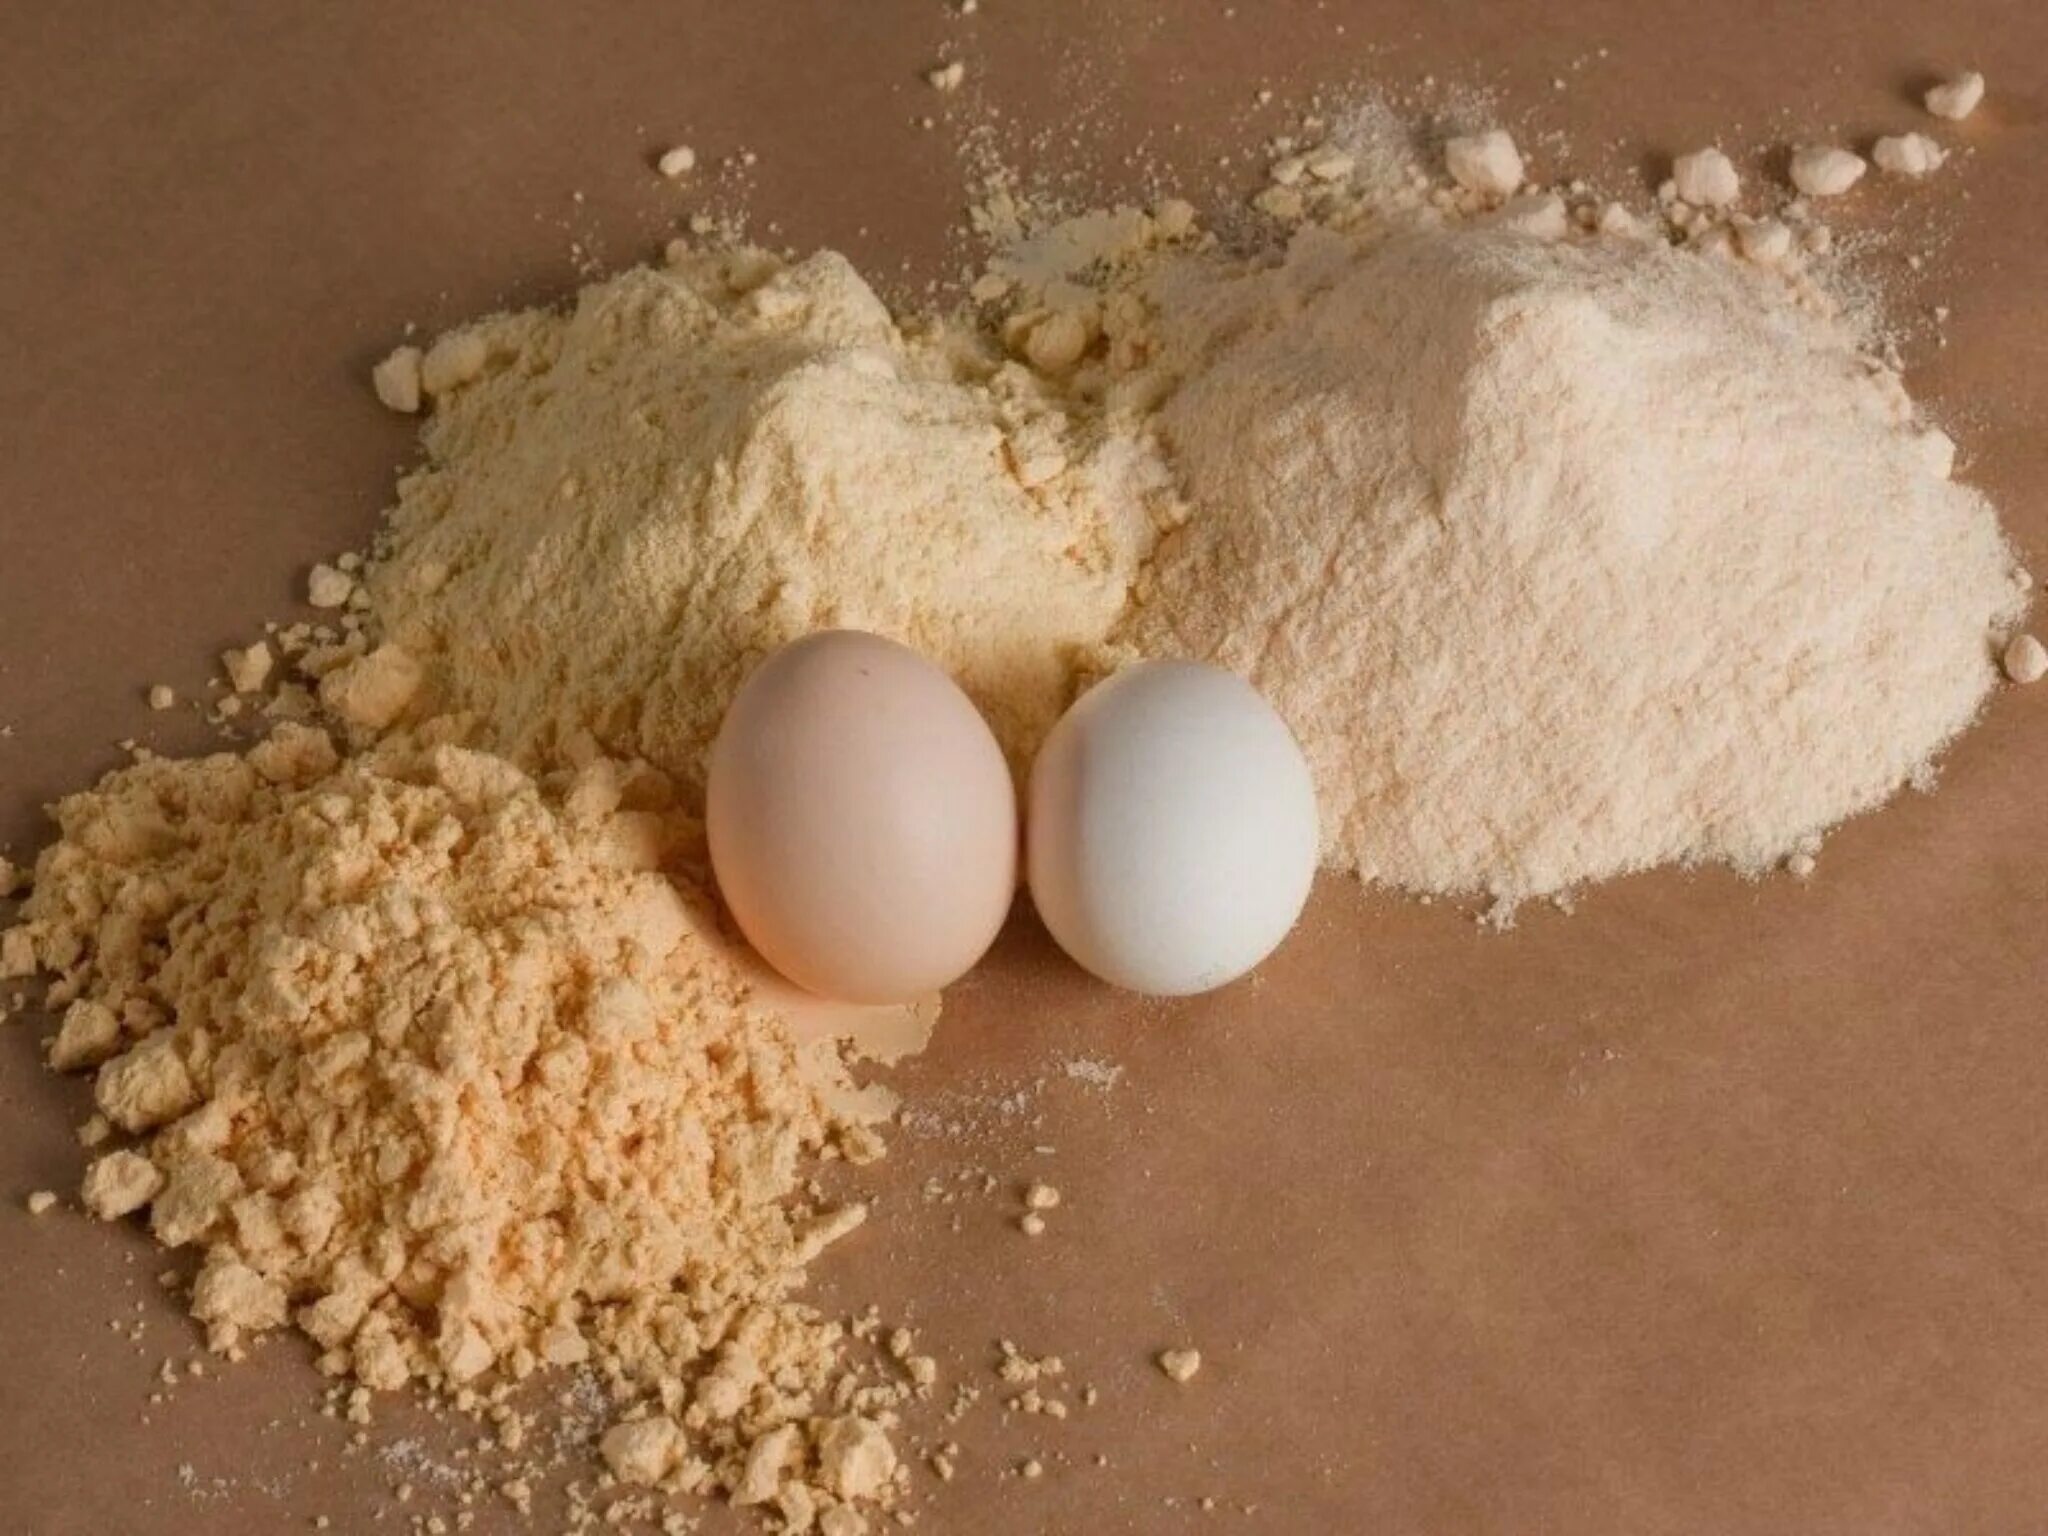 Белки яиц купить. Яичный порошок, меланж, альбумин. Yaichnyj-Zheltok порошок. Яйца, яичный меланж и яичный порошок. Альбумин сухой яичный белок.